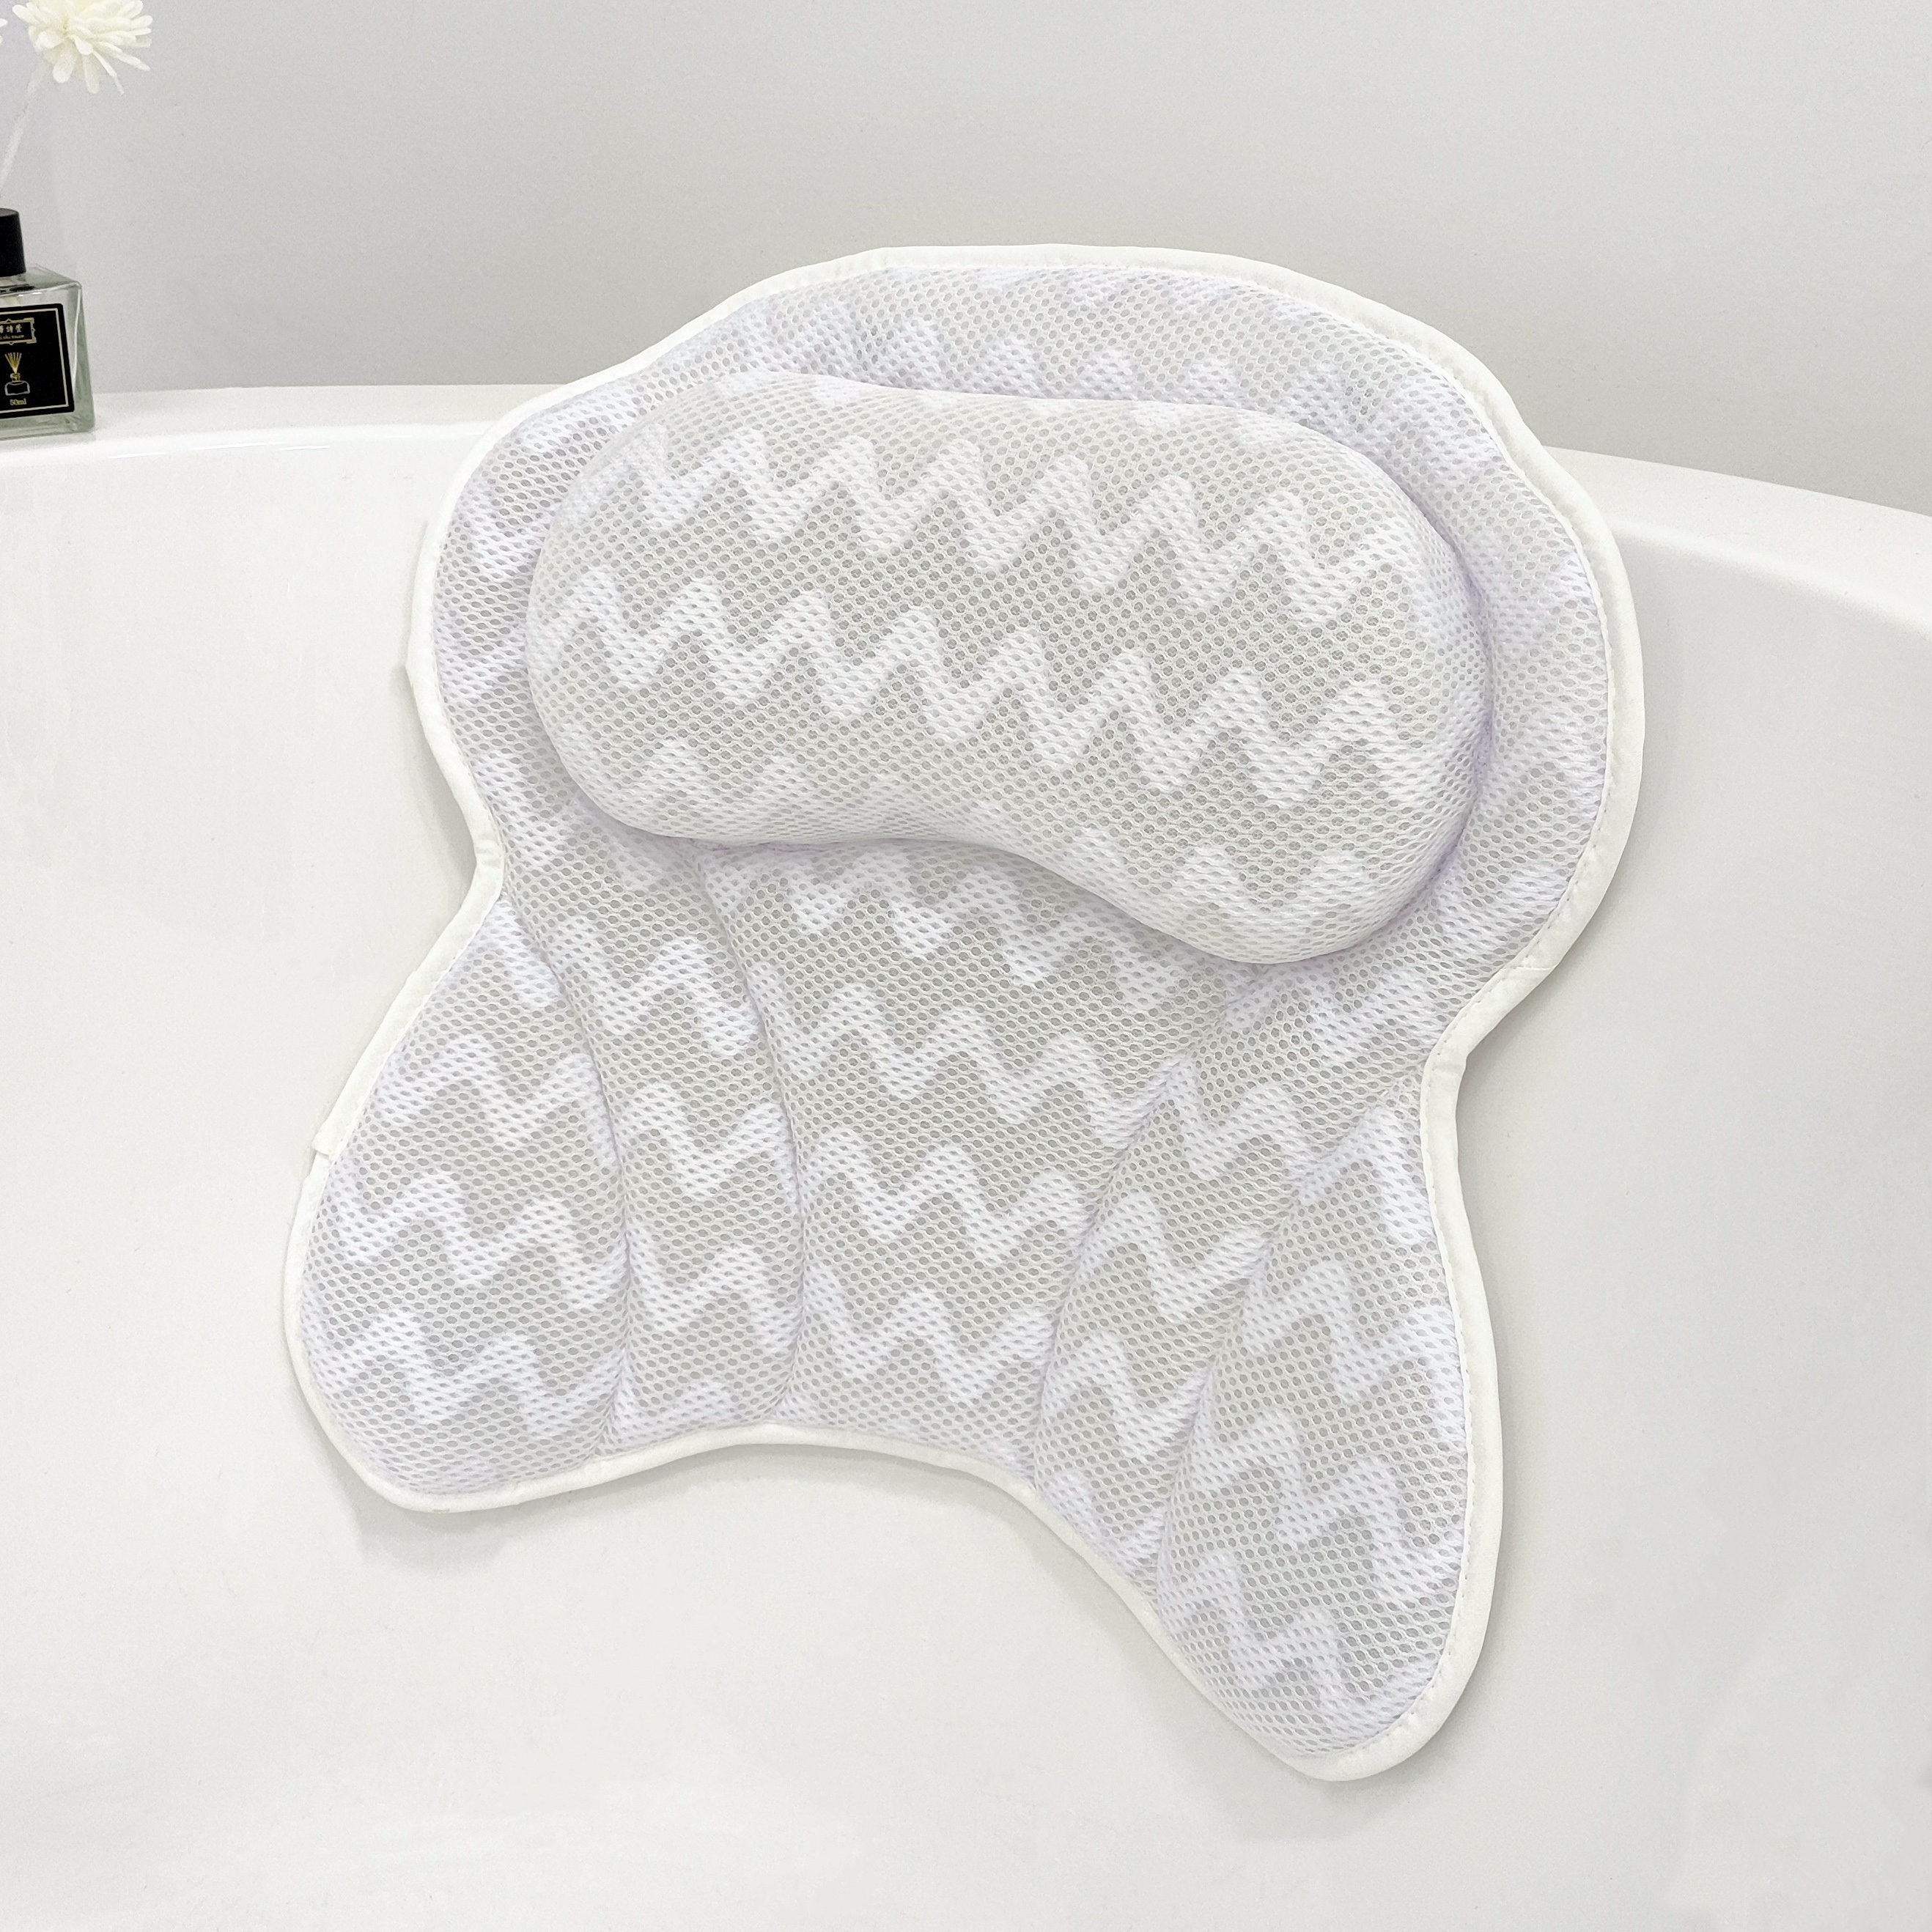  Bath Cushions, Ergonomic Bath Cushion for Head, 3D